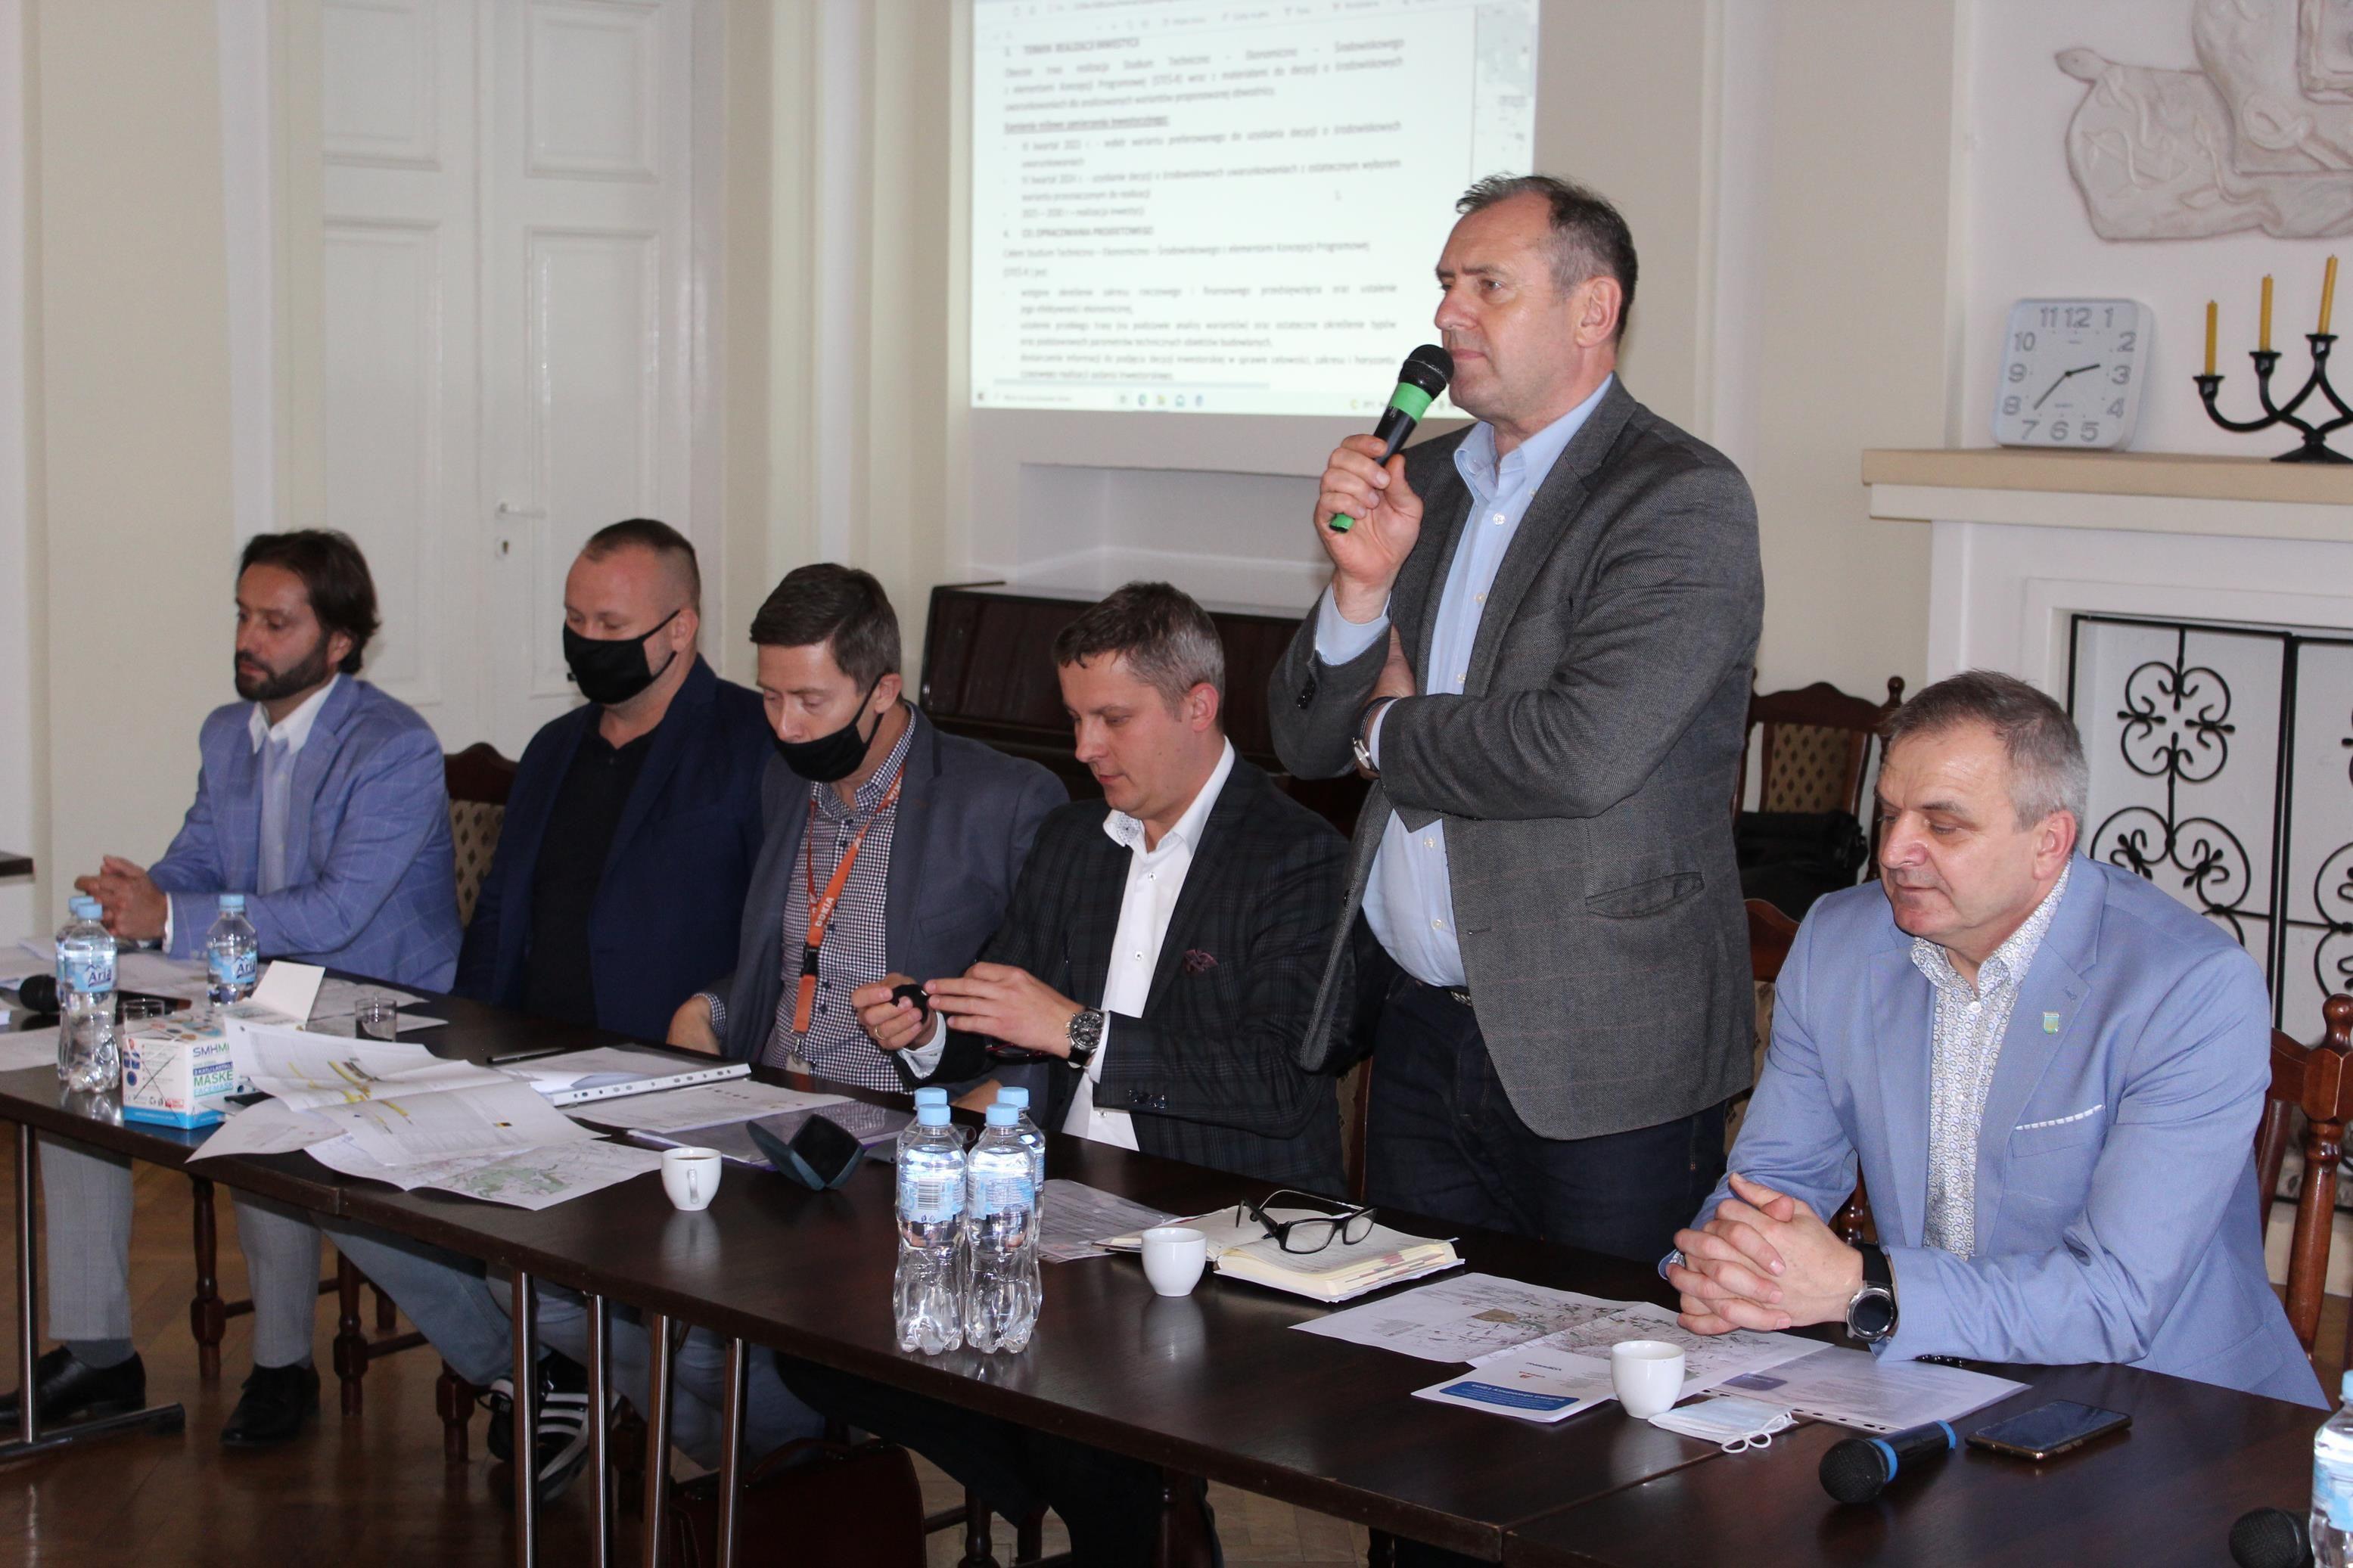 Spotkanie informacyjne dotyczące opracowania projektowego budowy obwodnicy Lipna - 5 października 2021 r.